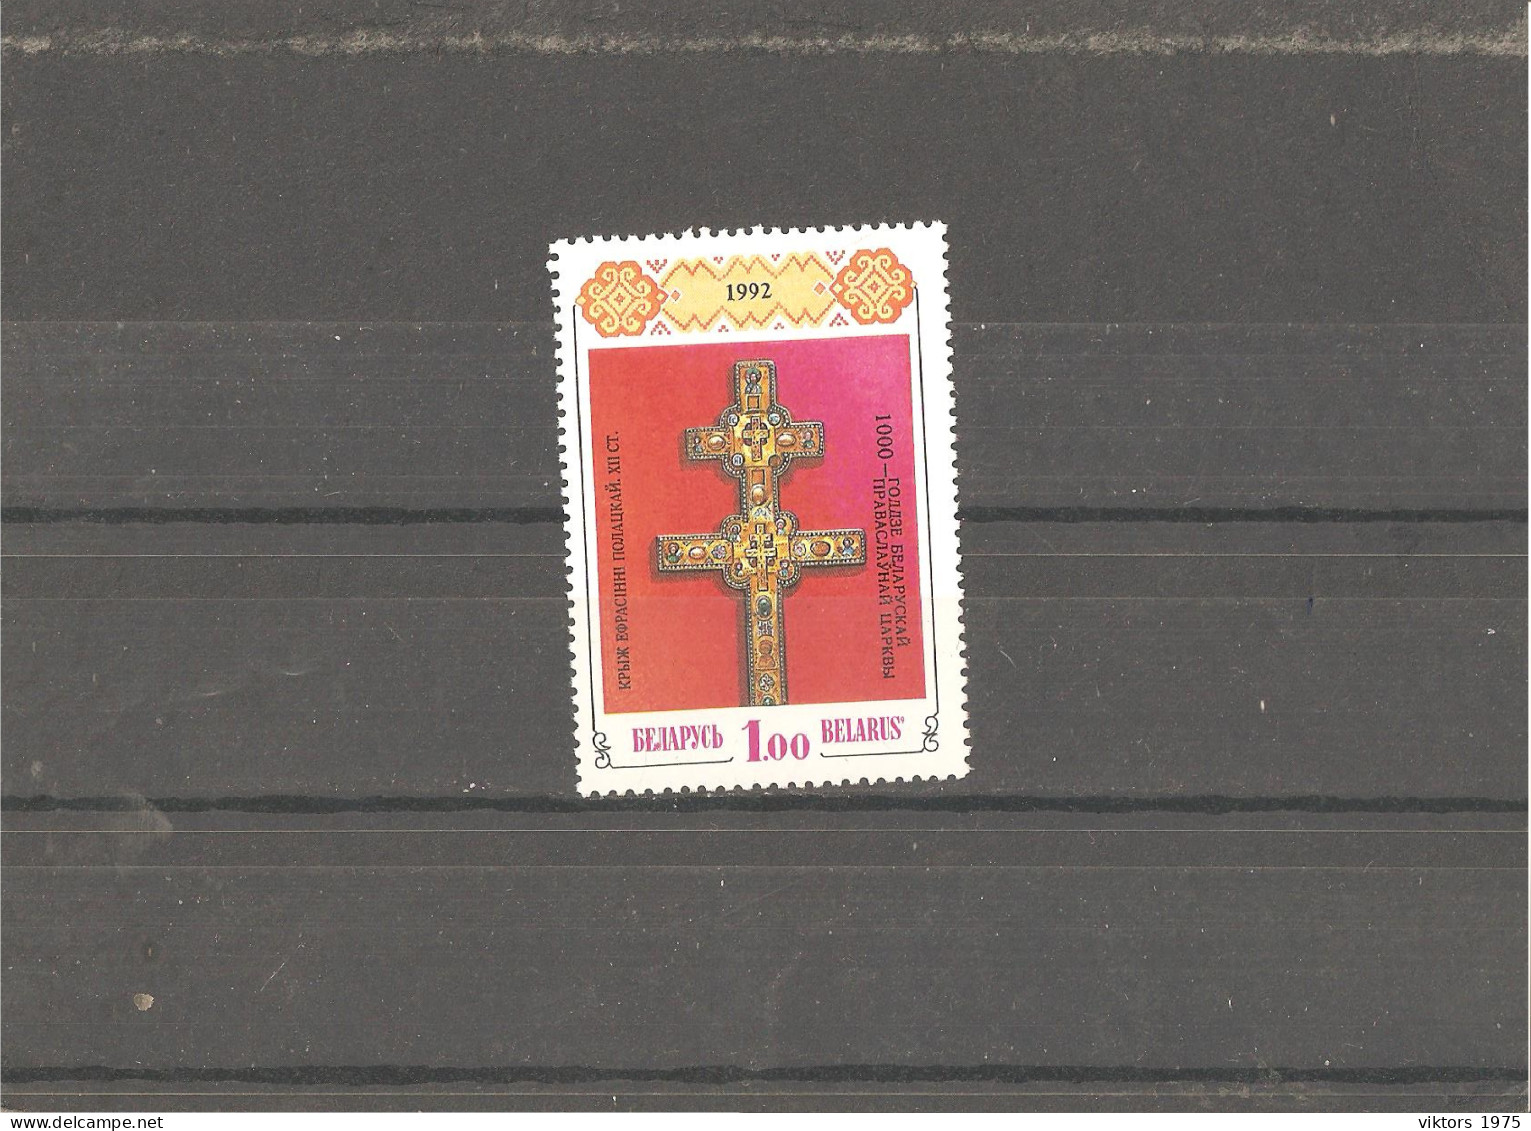 MNH Stamp Nr.6 In MICHEL Catalog - Belarus